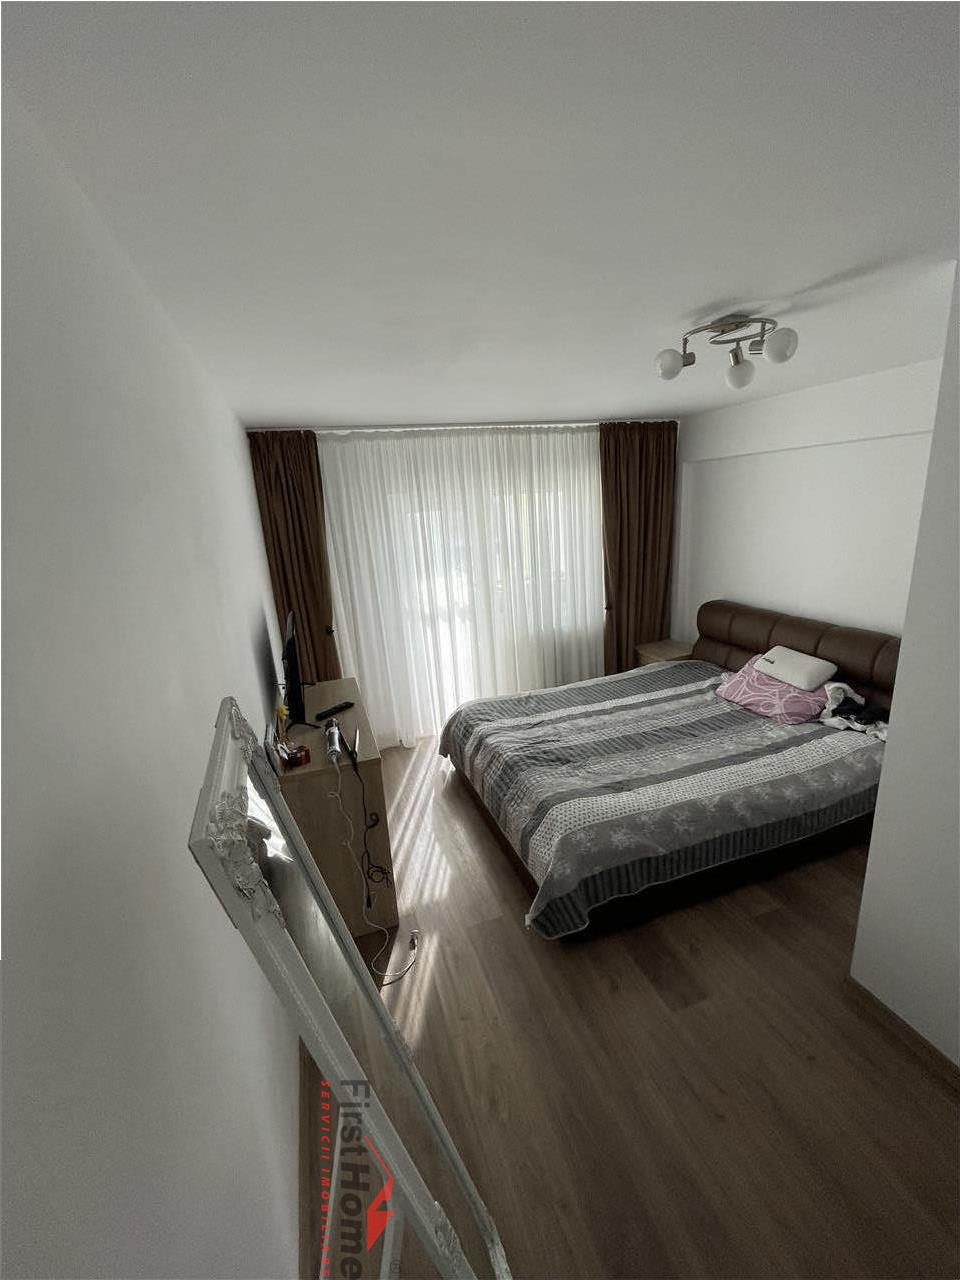 Apartament 4 camere, mobilat si utilat, CT, zona Longinescu, de vanzare